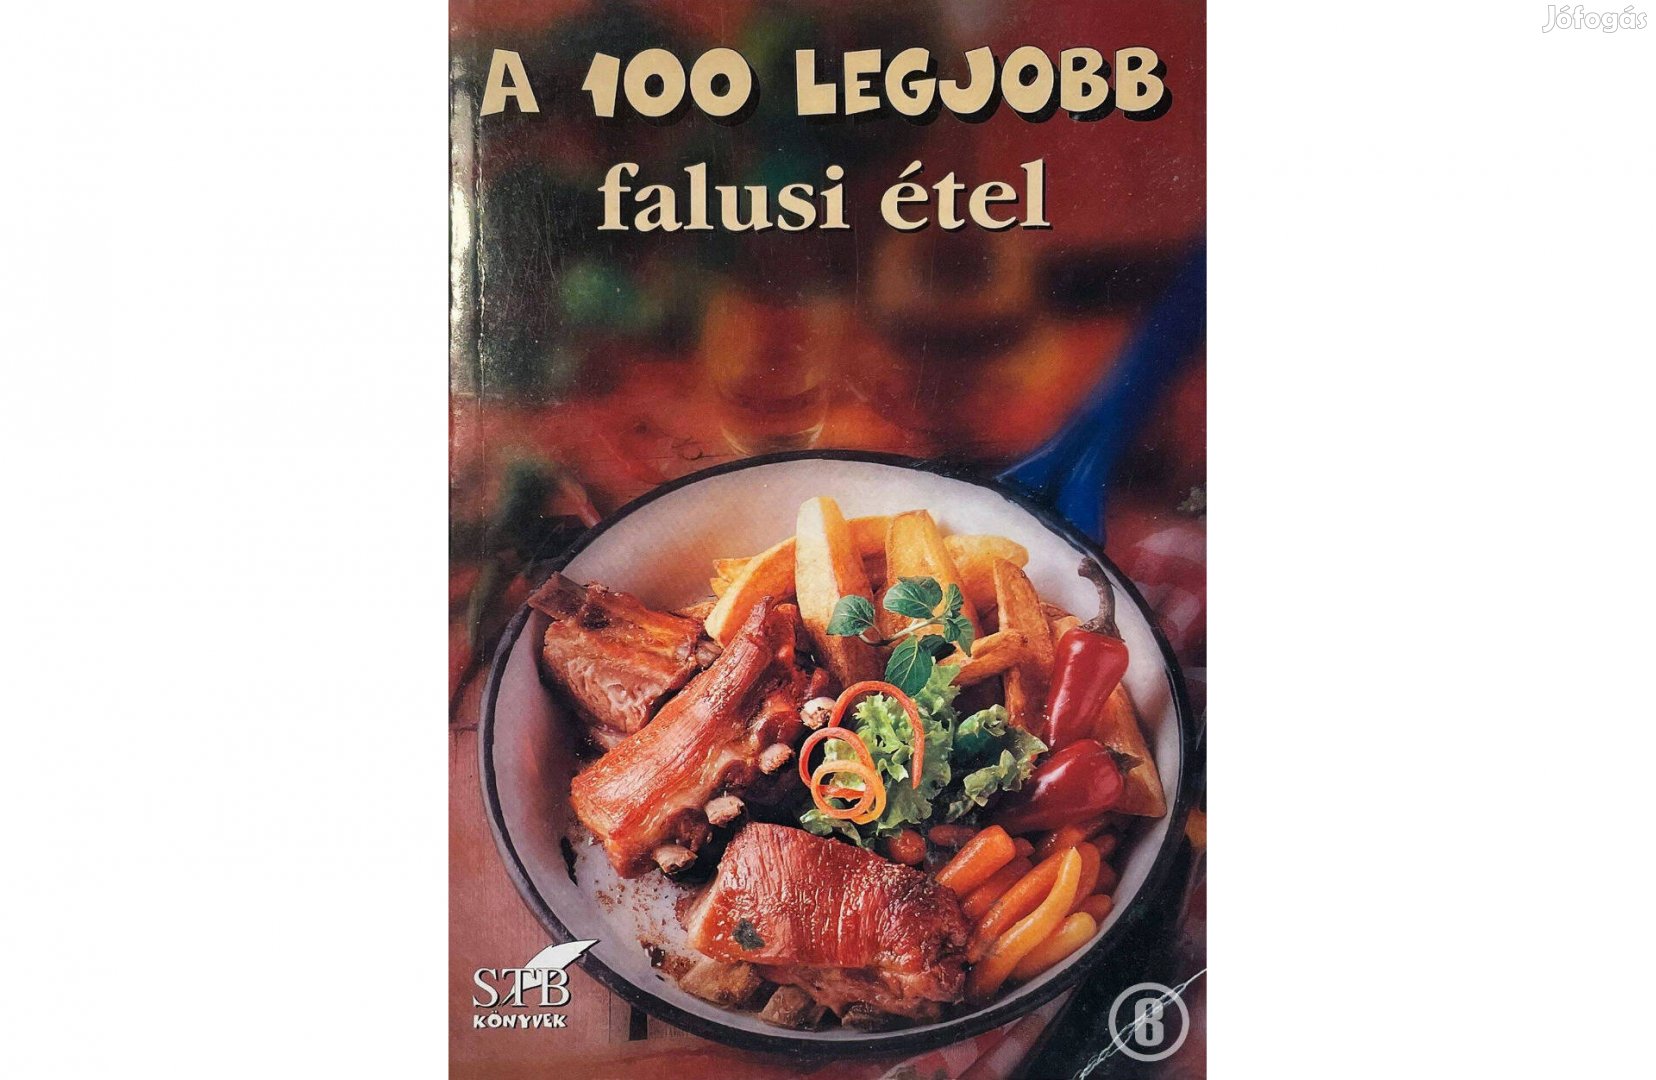 A 100 legjobb falusi étel (65. kötet / szerk. Toró Elza)